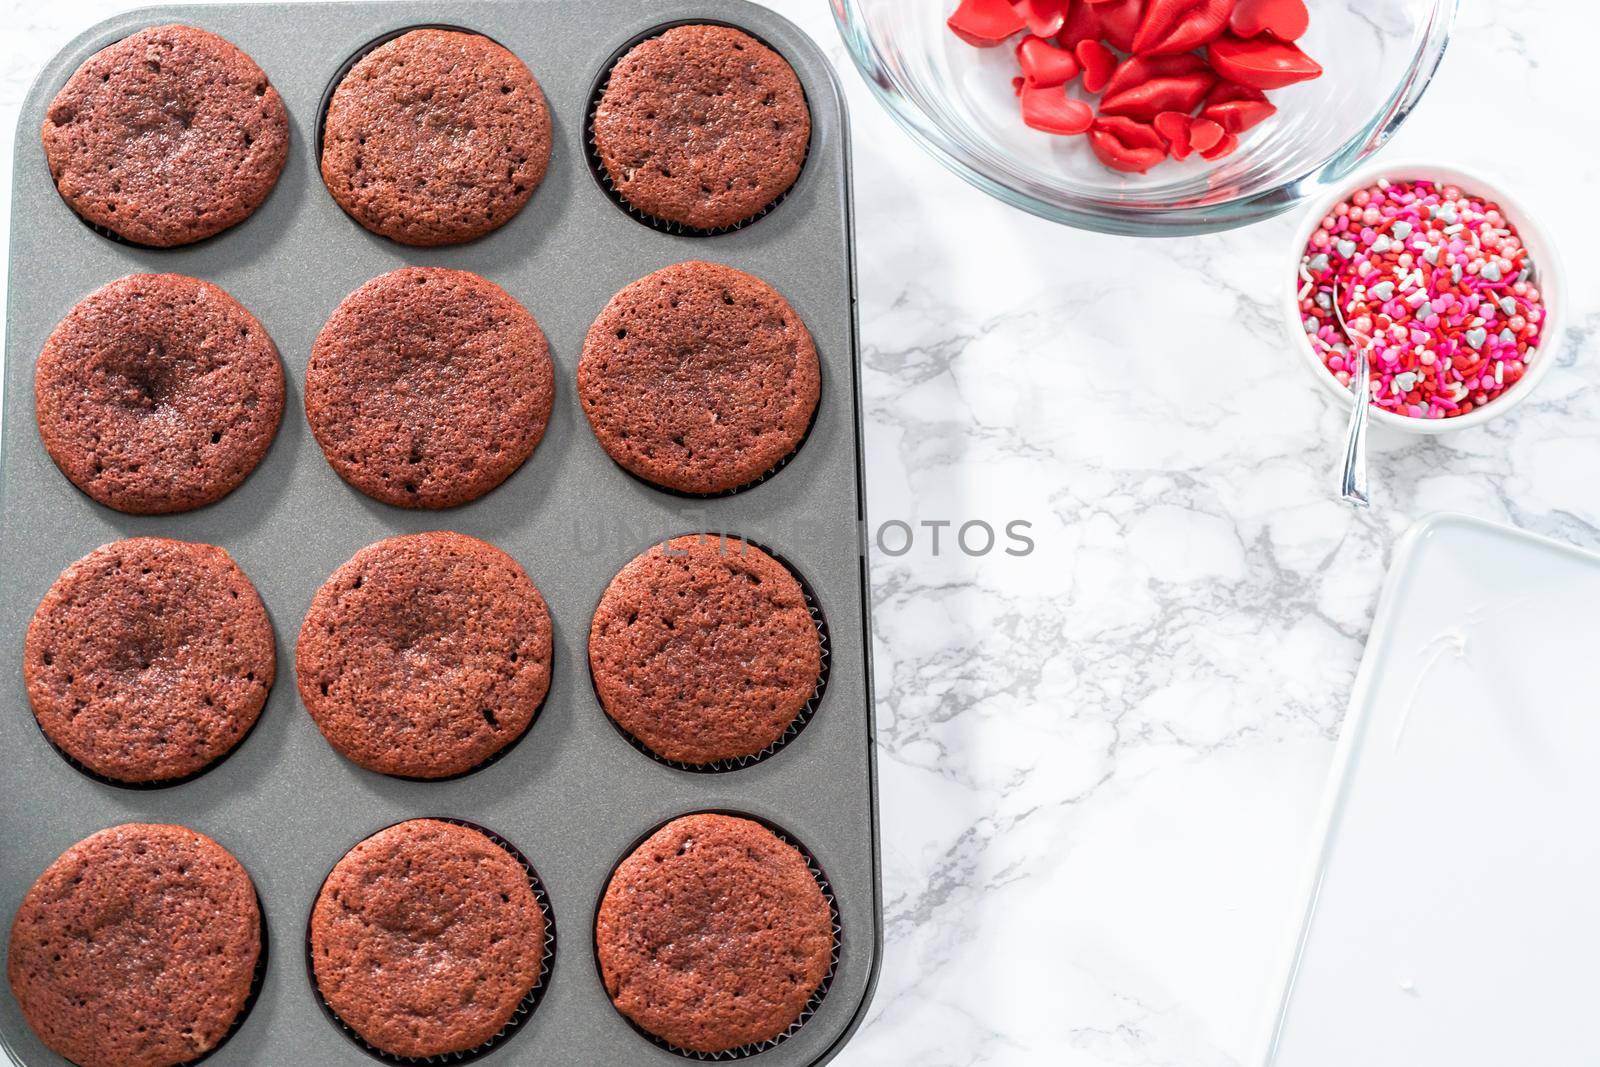 Cooling freshly baked red velvet cupcakes.